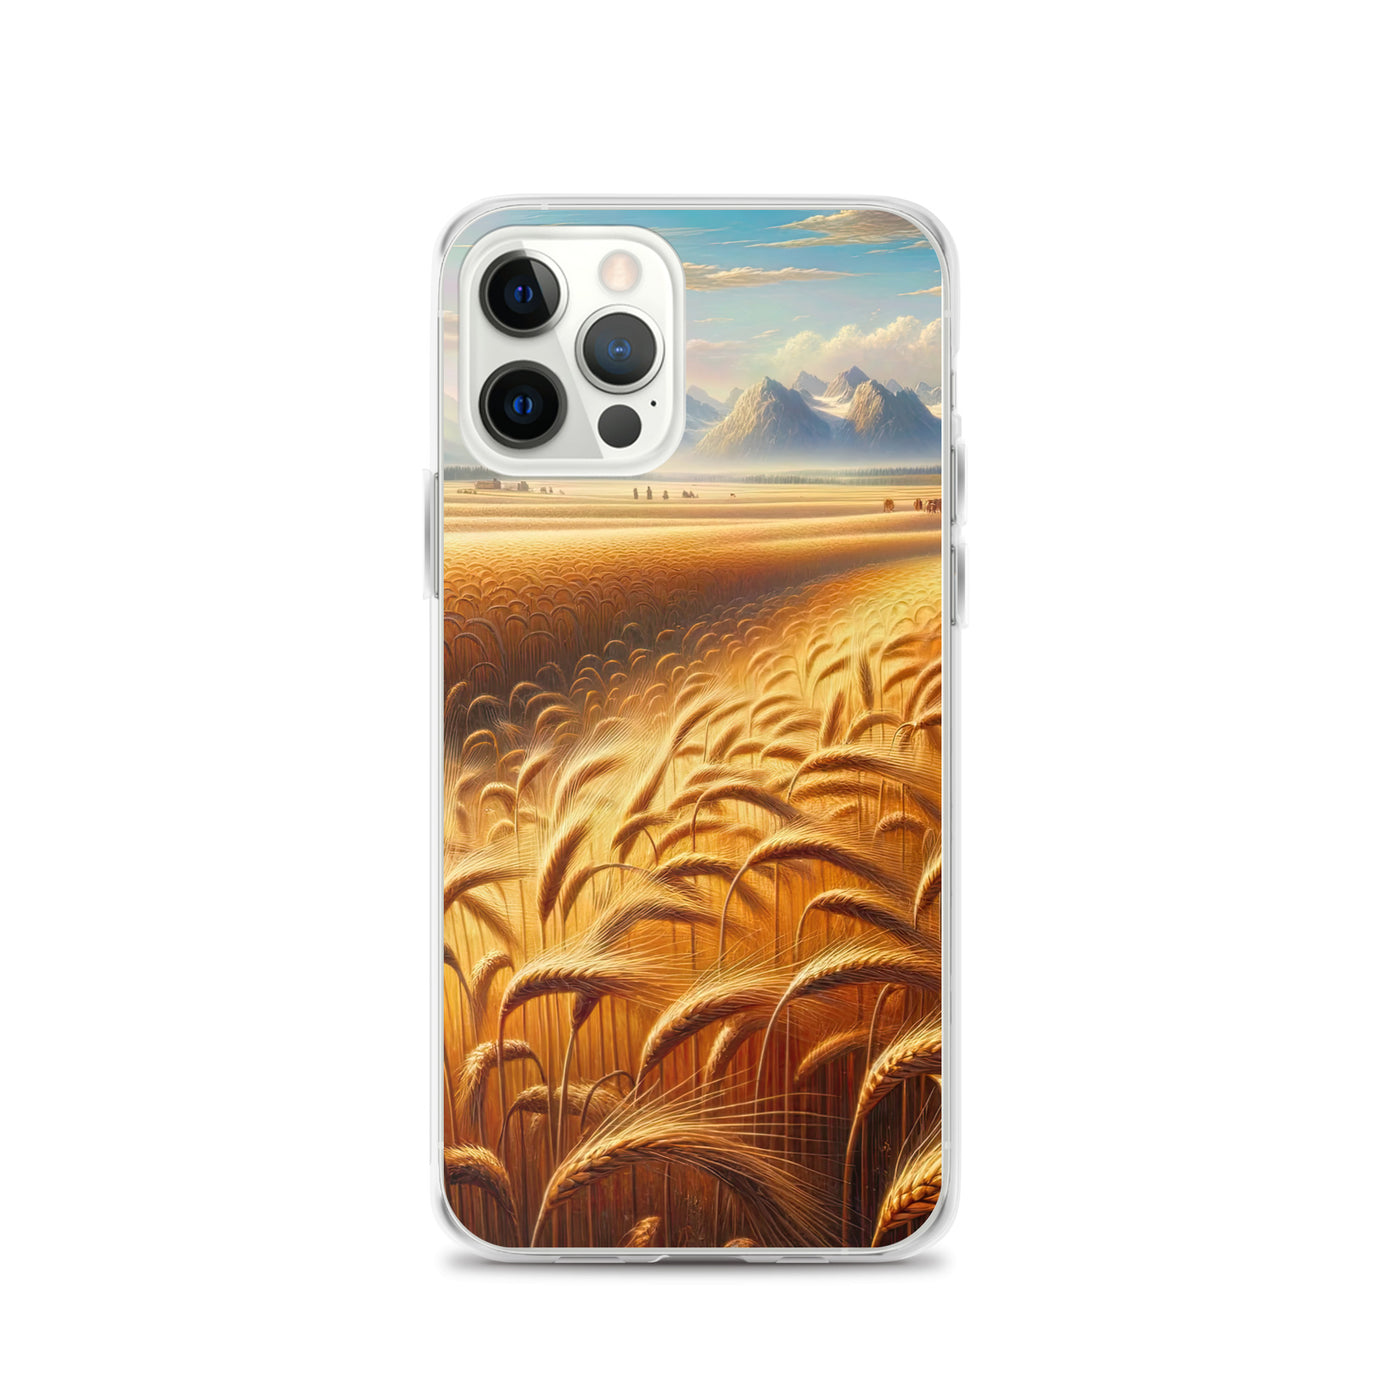 Ölgemälde eines bayerischen Weizenfeldes, endlose goldene Halme (TR) - iPhone Schutzhülle (durchsichtig) xxx yyy zzz iPhone 12 Pro